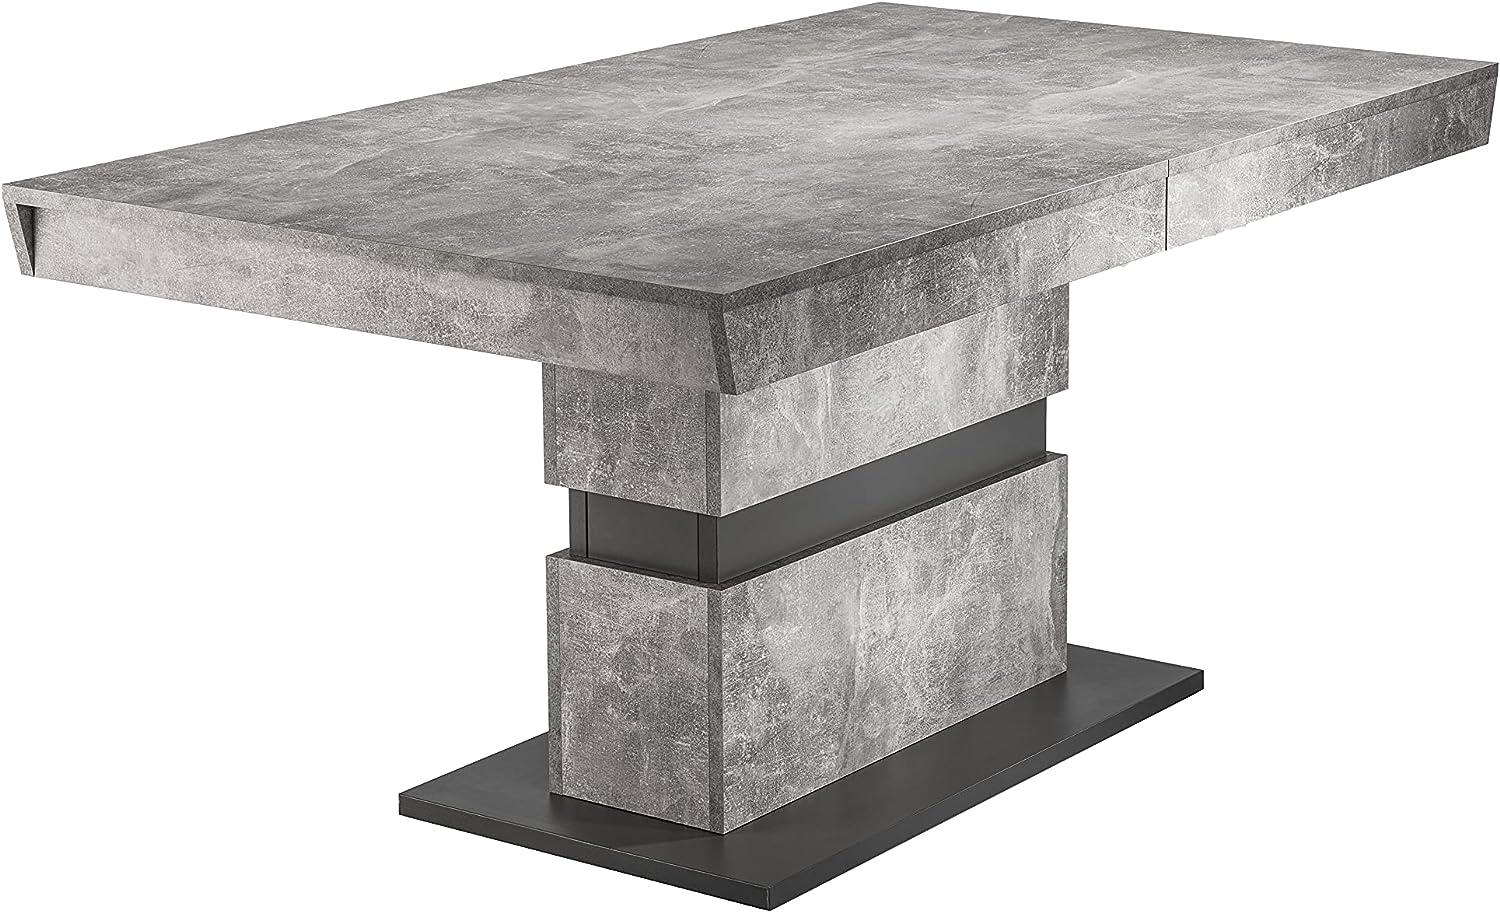 Esszimmertisch /Küchen-Tisch 160 cm mit Auszugsfunktion auf 215 cm /Auszugstisch Light Atelier Beton-Optik grau /Esstisch ausziehbar mit Einlegeplatte /160-215x90x75cm (LxBxH) Bild 1